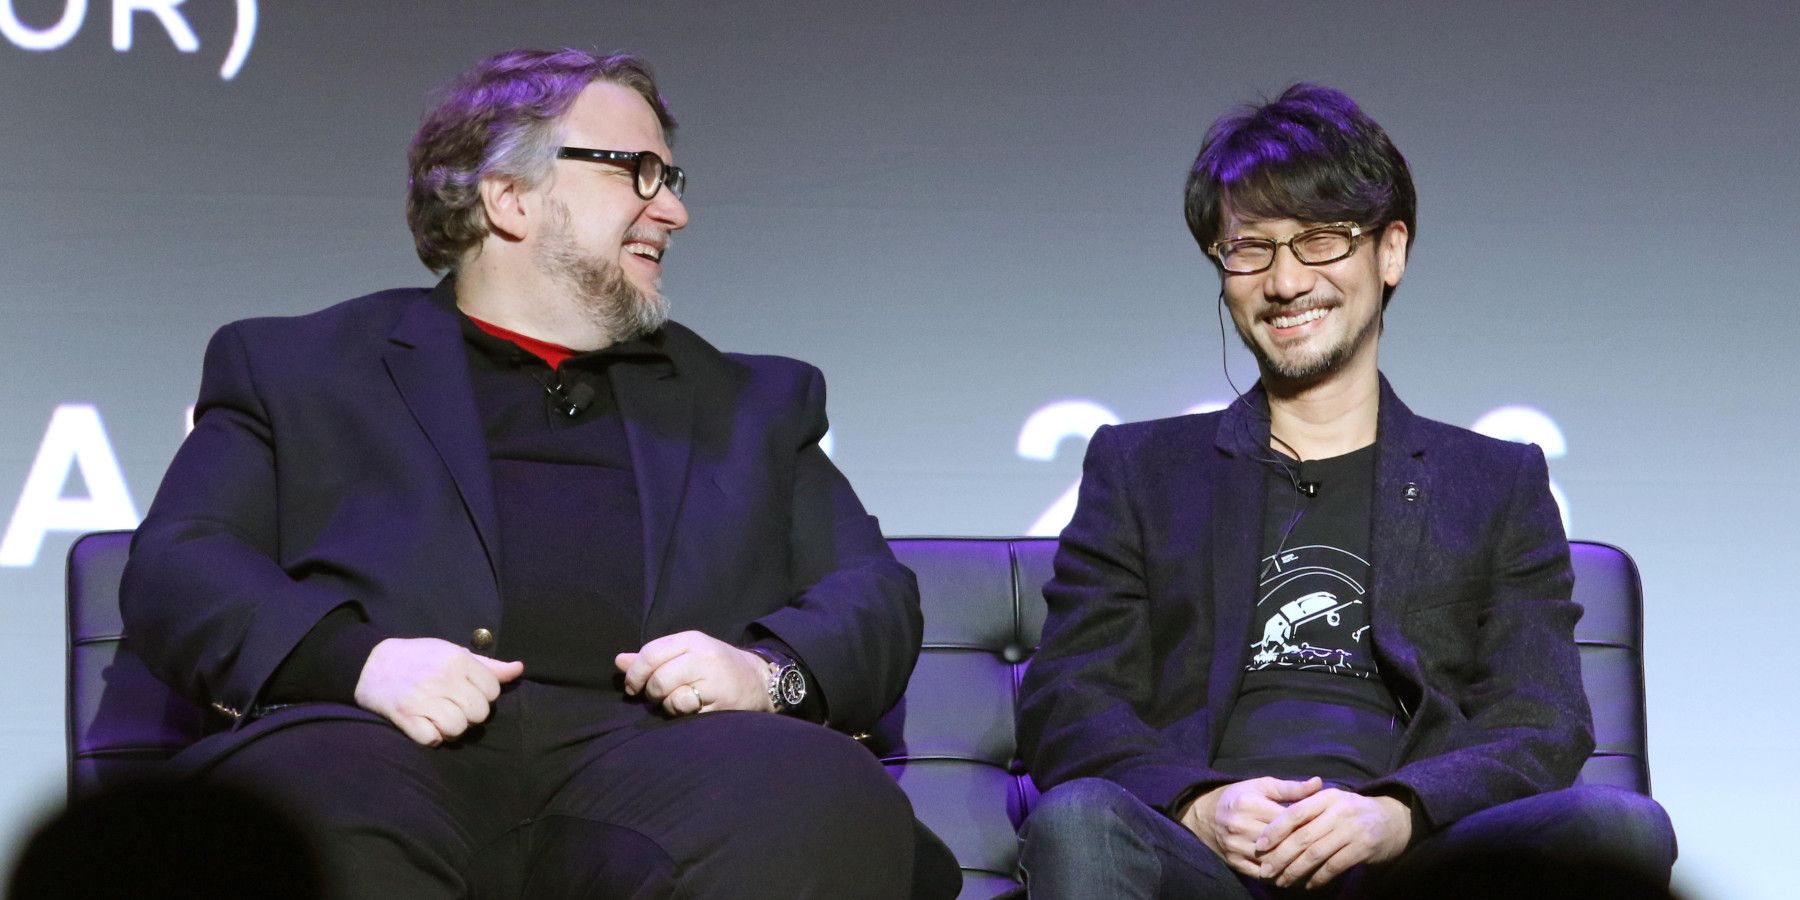 Hideo Kojima and Guillermo del Toro sitting together